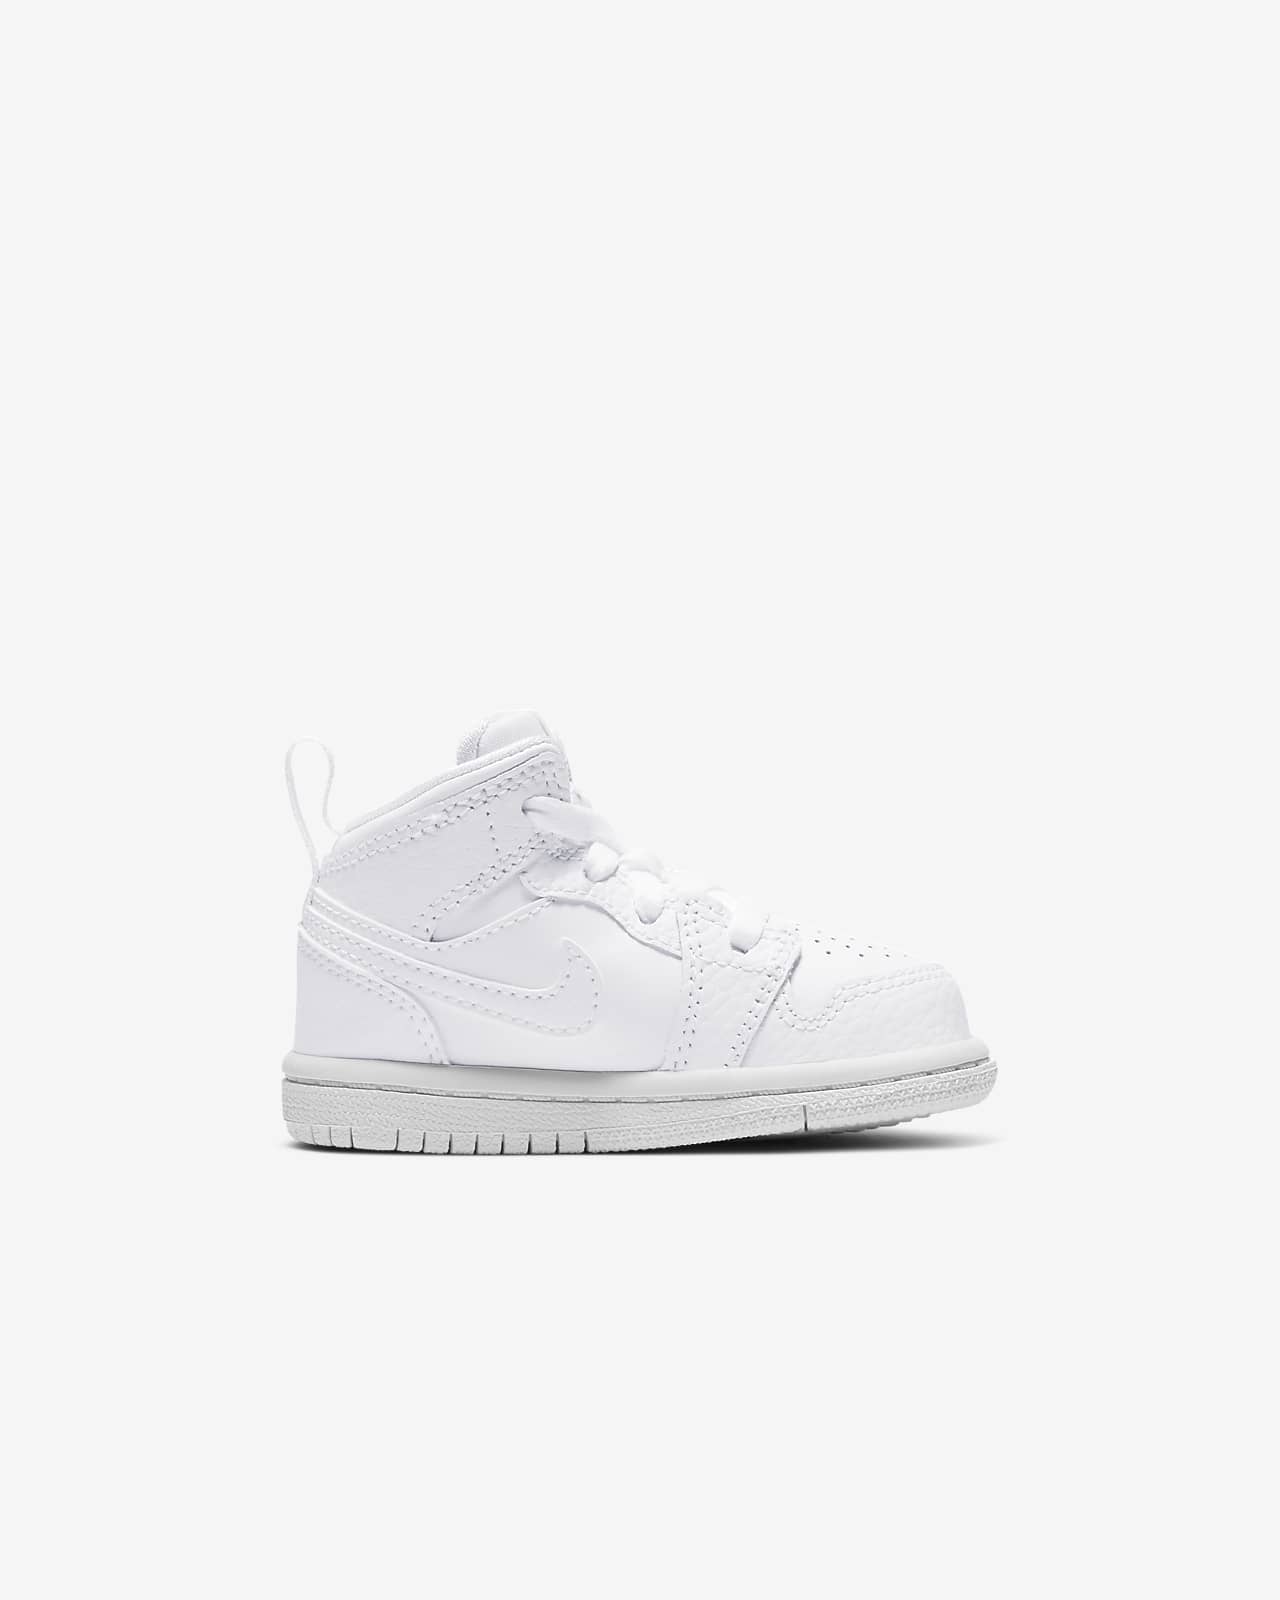 Jordan 1 Mid Baby and Toddler Shoe. Nike GB